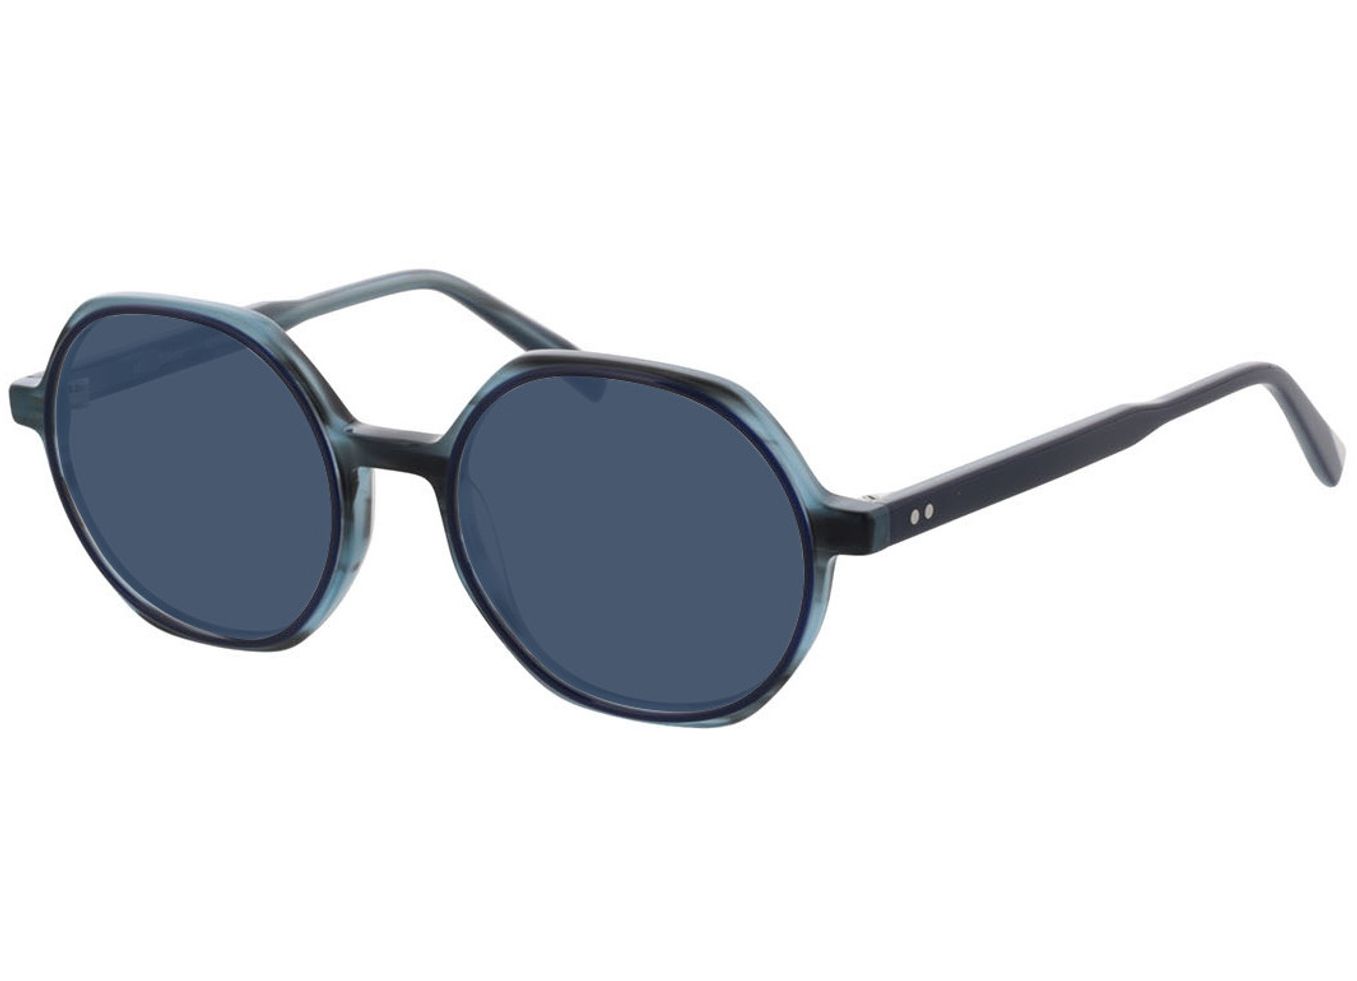 Toledo - blau Sonnenbrille mit Sehstärke, Vollrand, geometric von Brille24 Collection